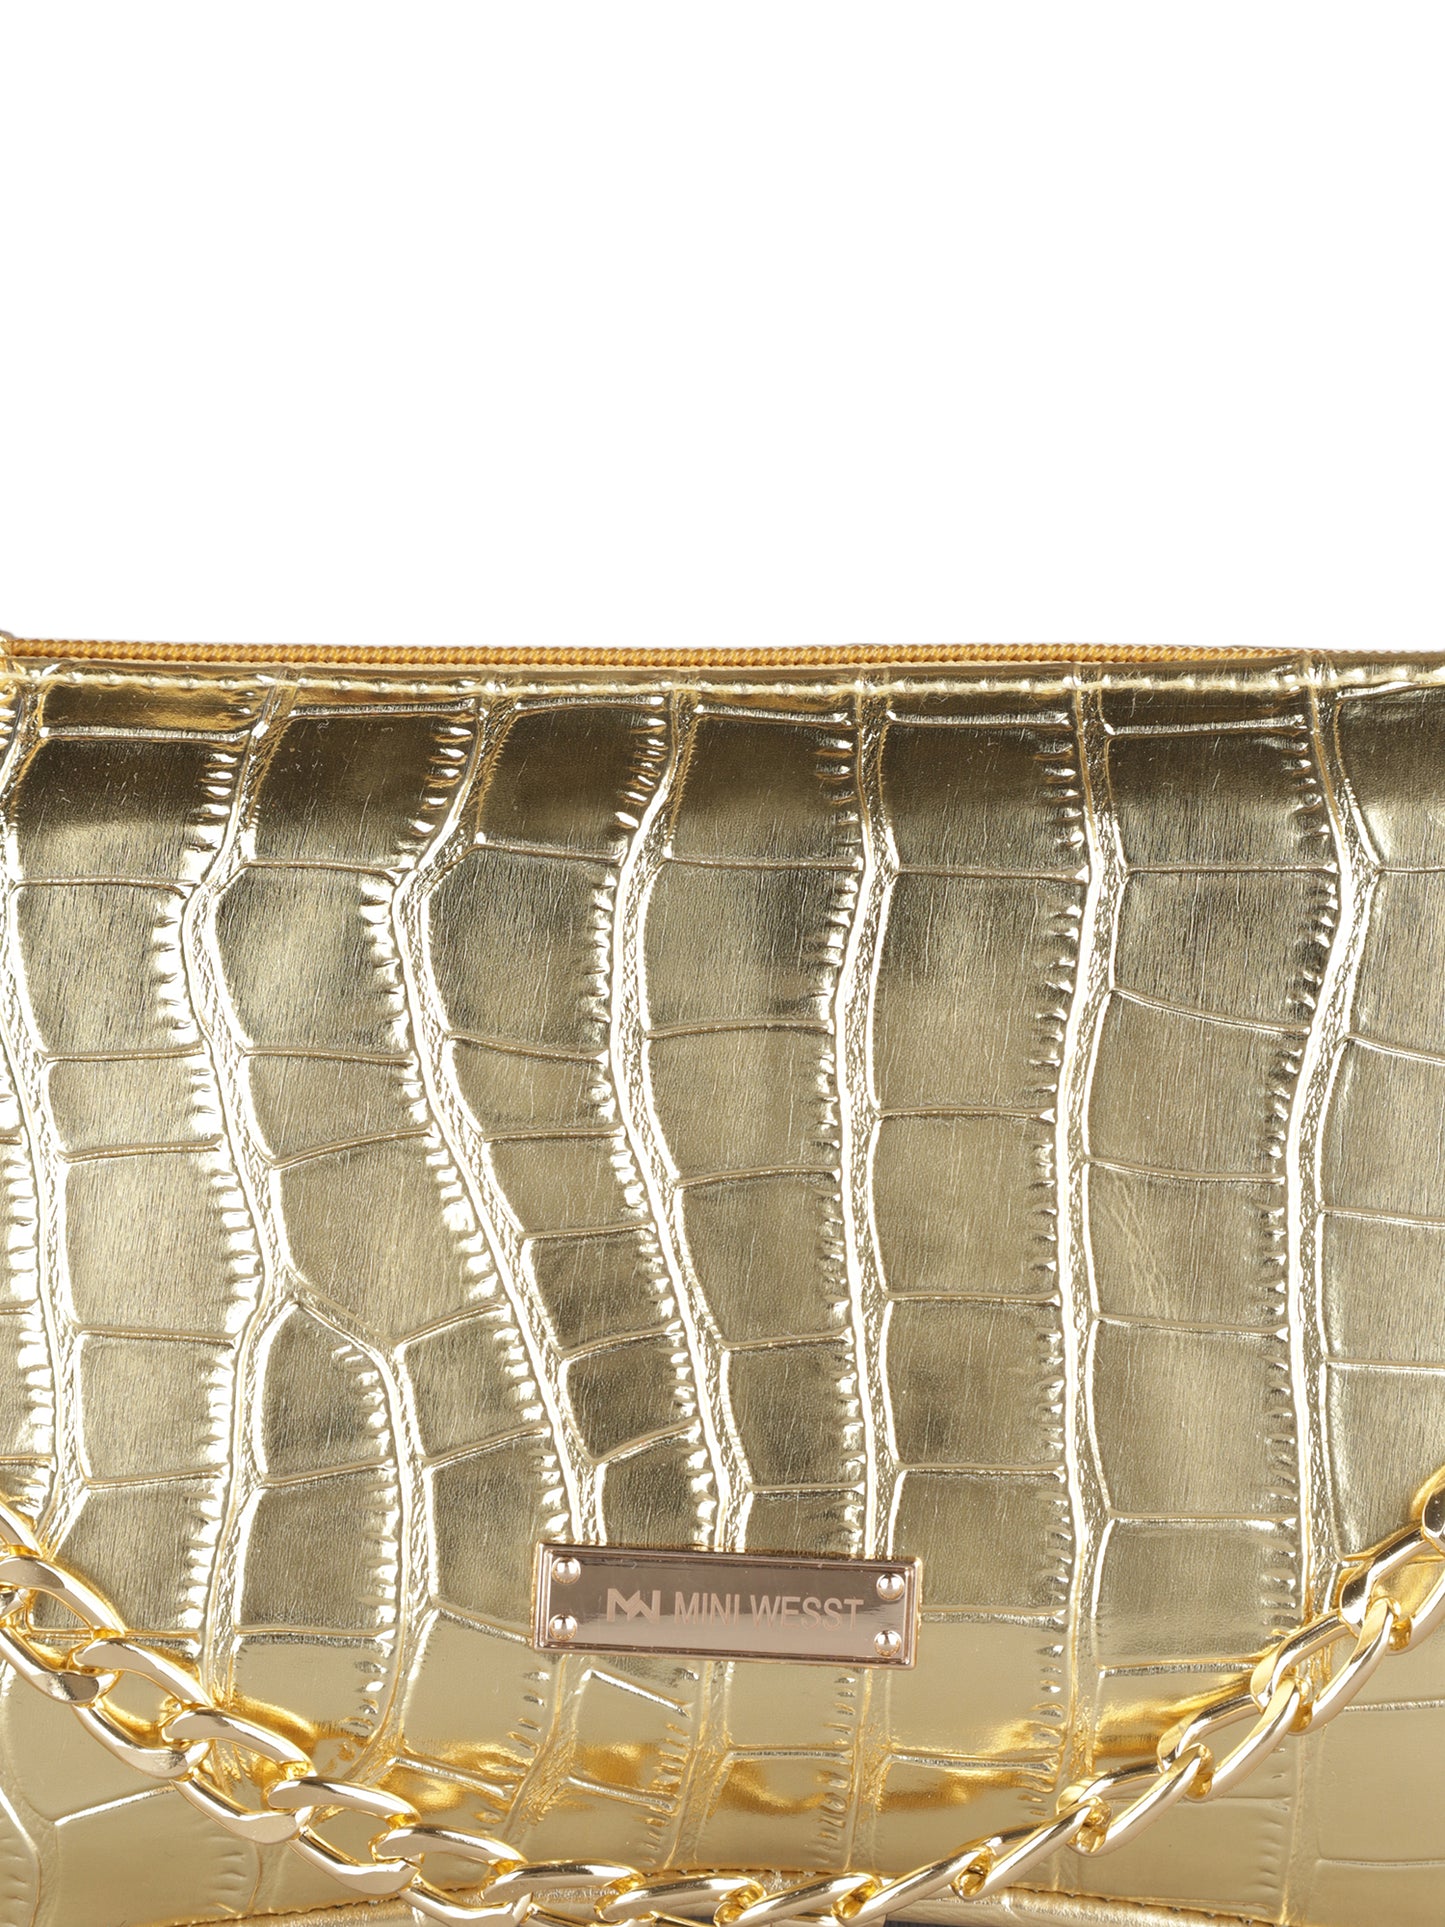 MINI WESST Women's Gold  Handbag(MWSB0005GD)